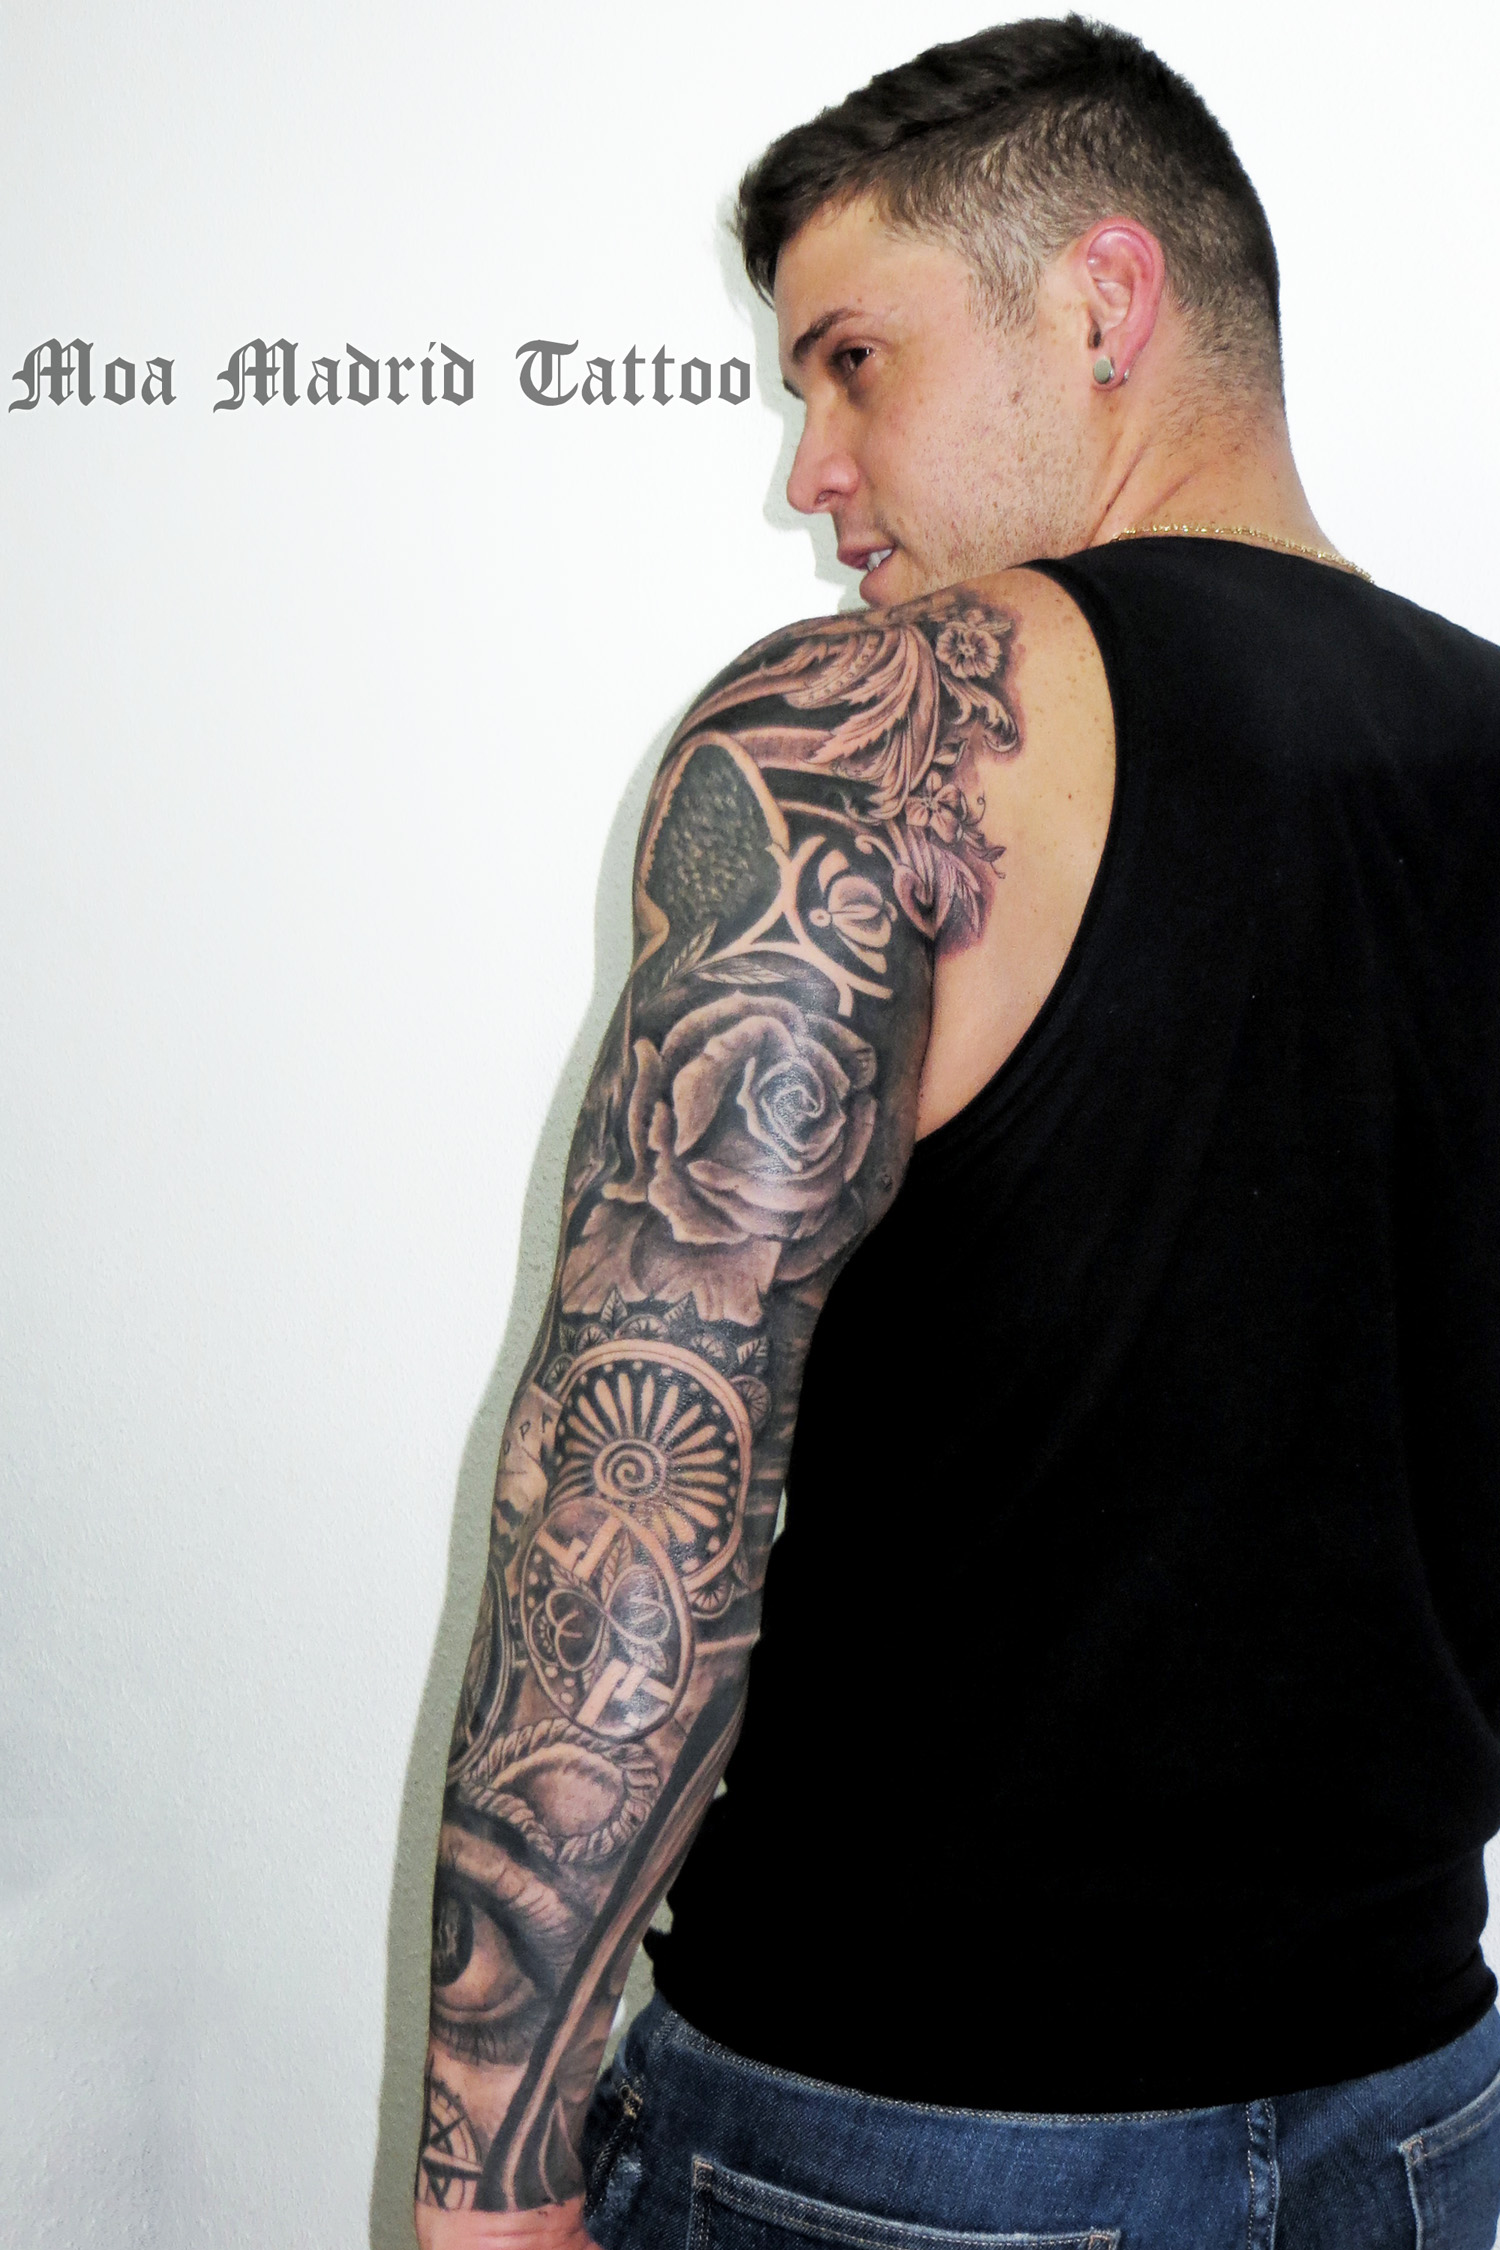 Vista trasera del brazo lleno de tatuajes